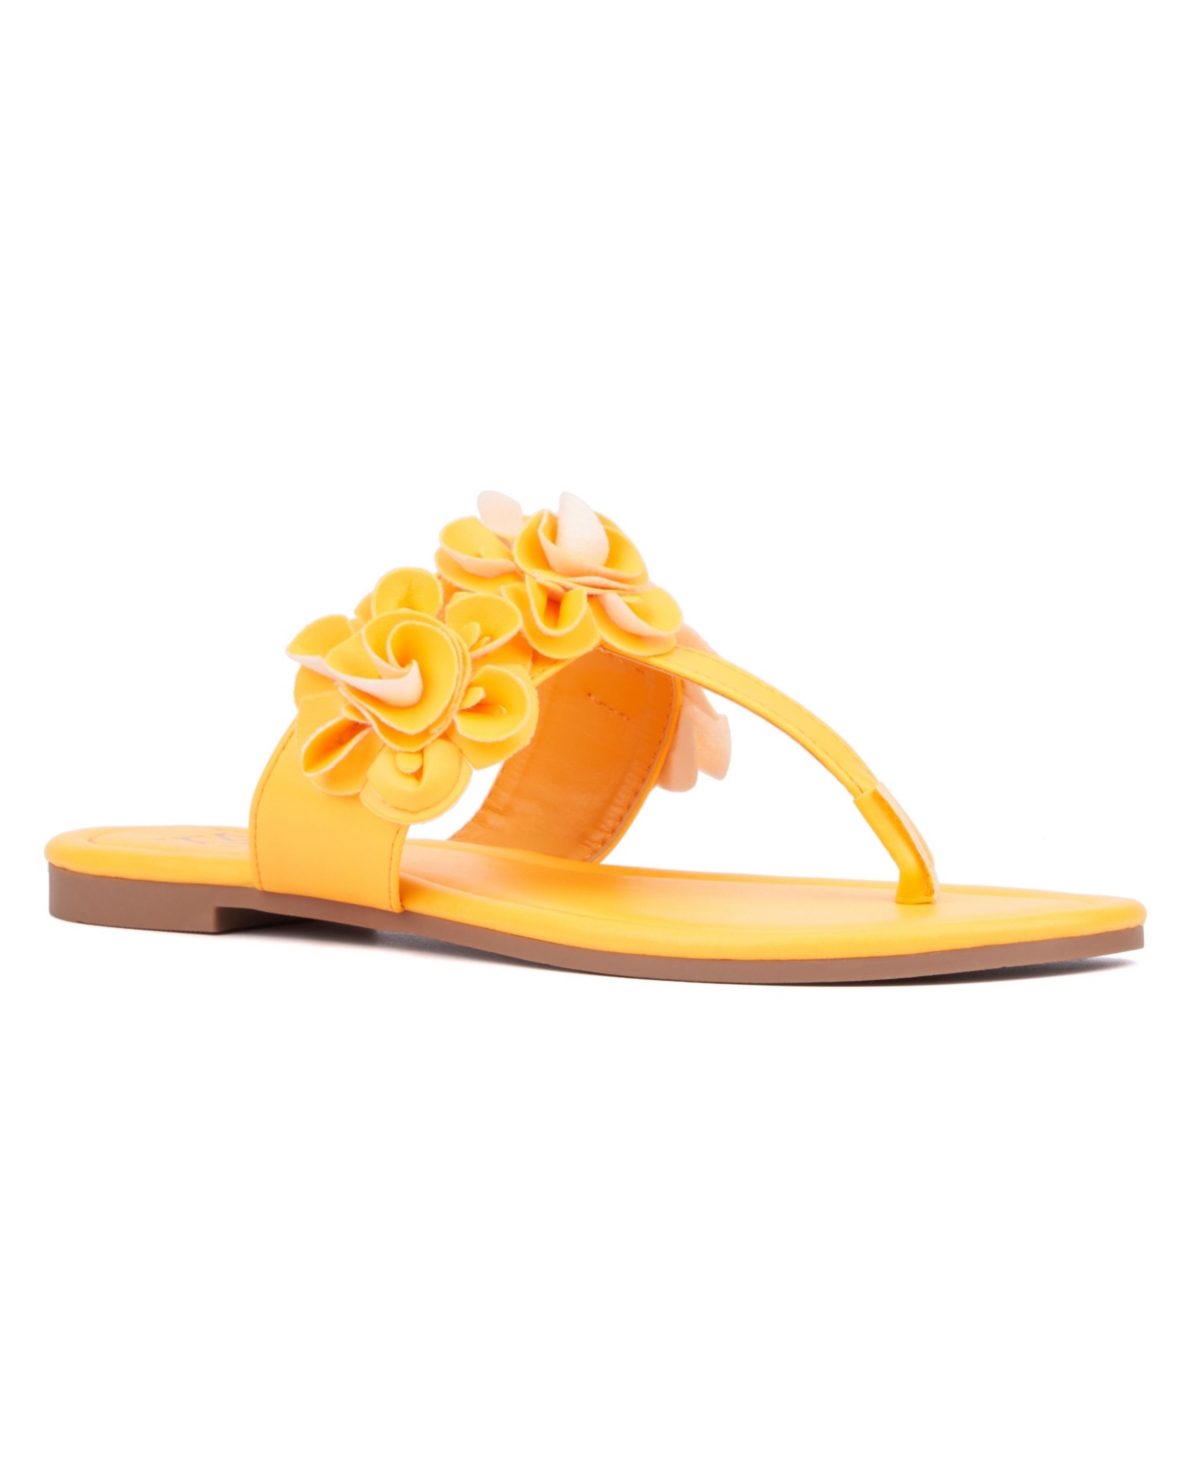 Liana Women's Flip Flop Sandal - Orange sorbet